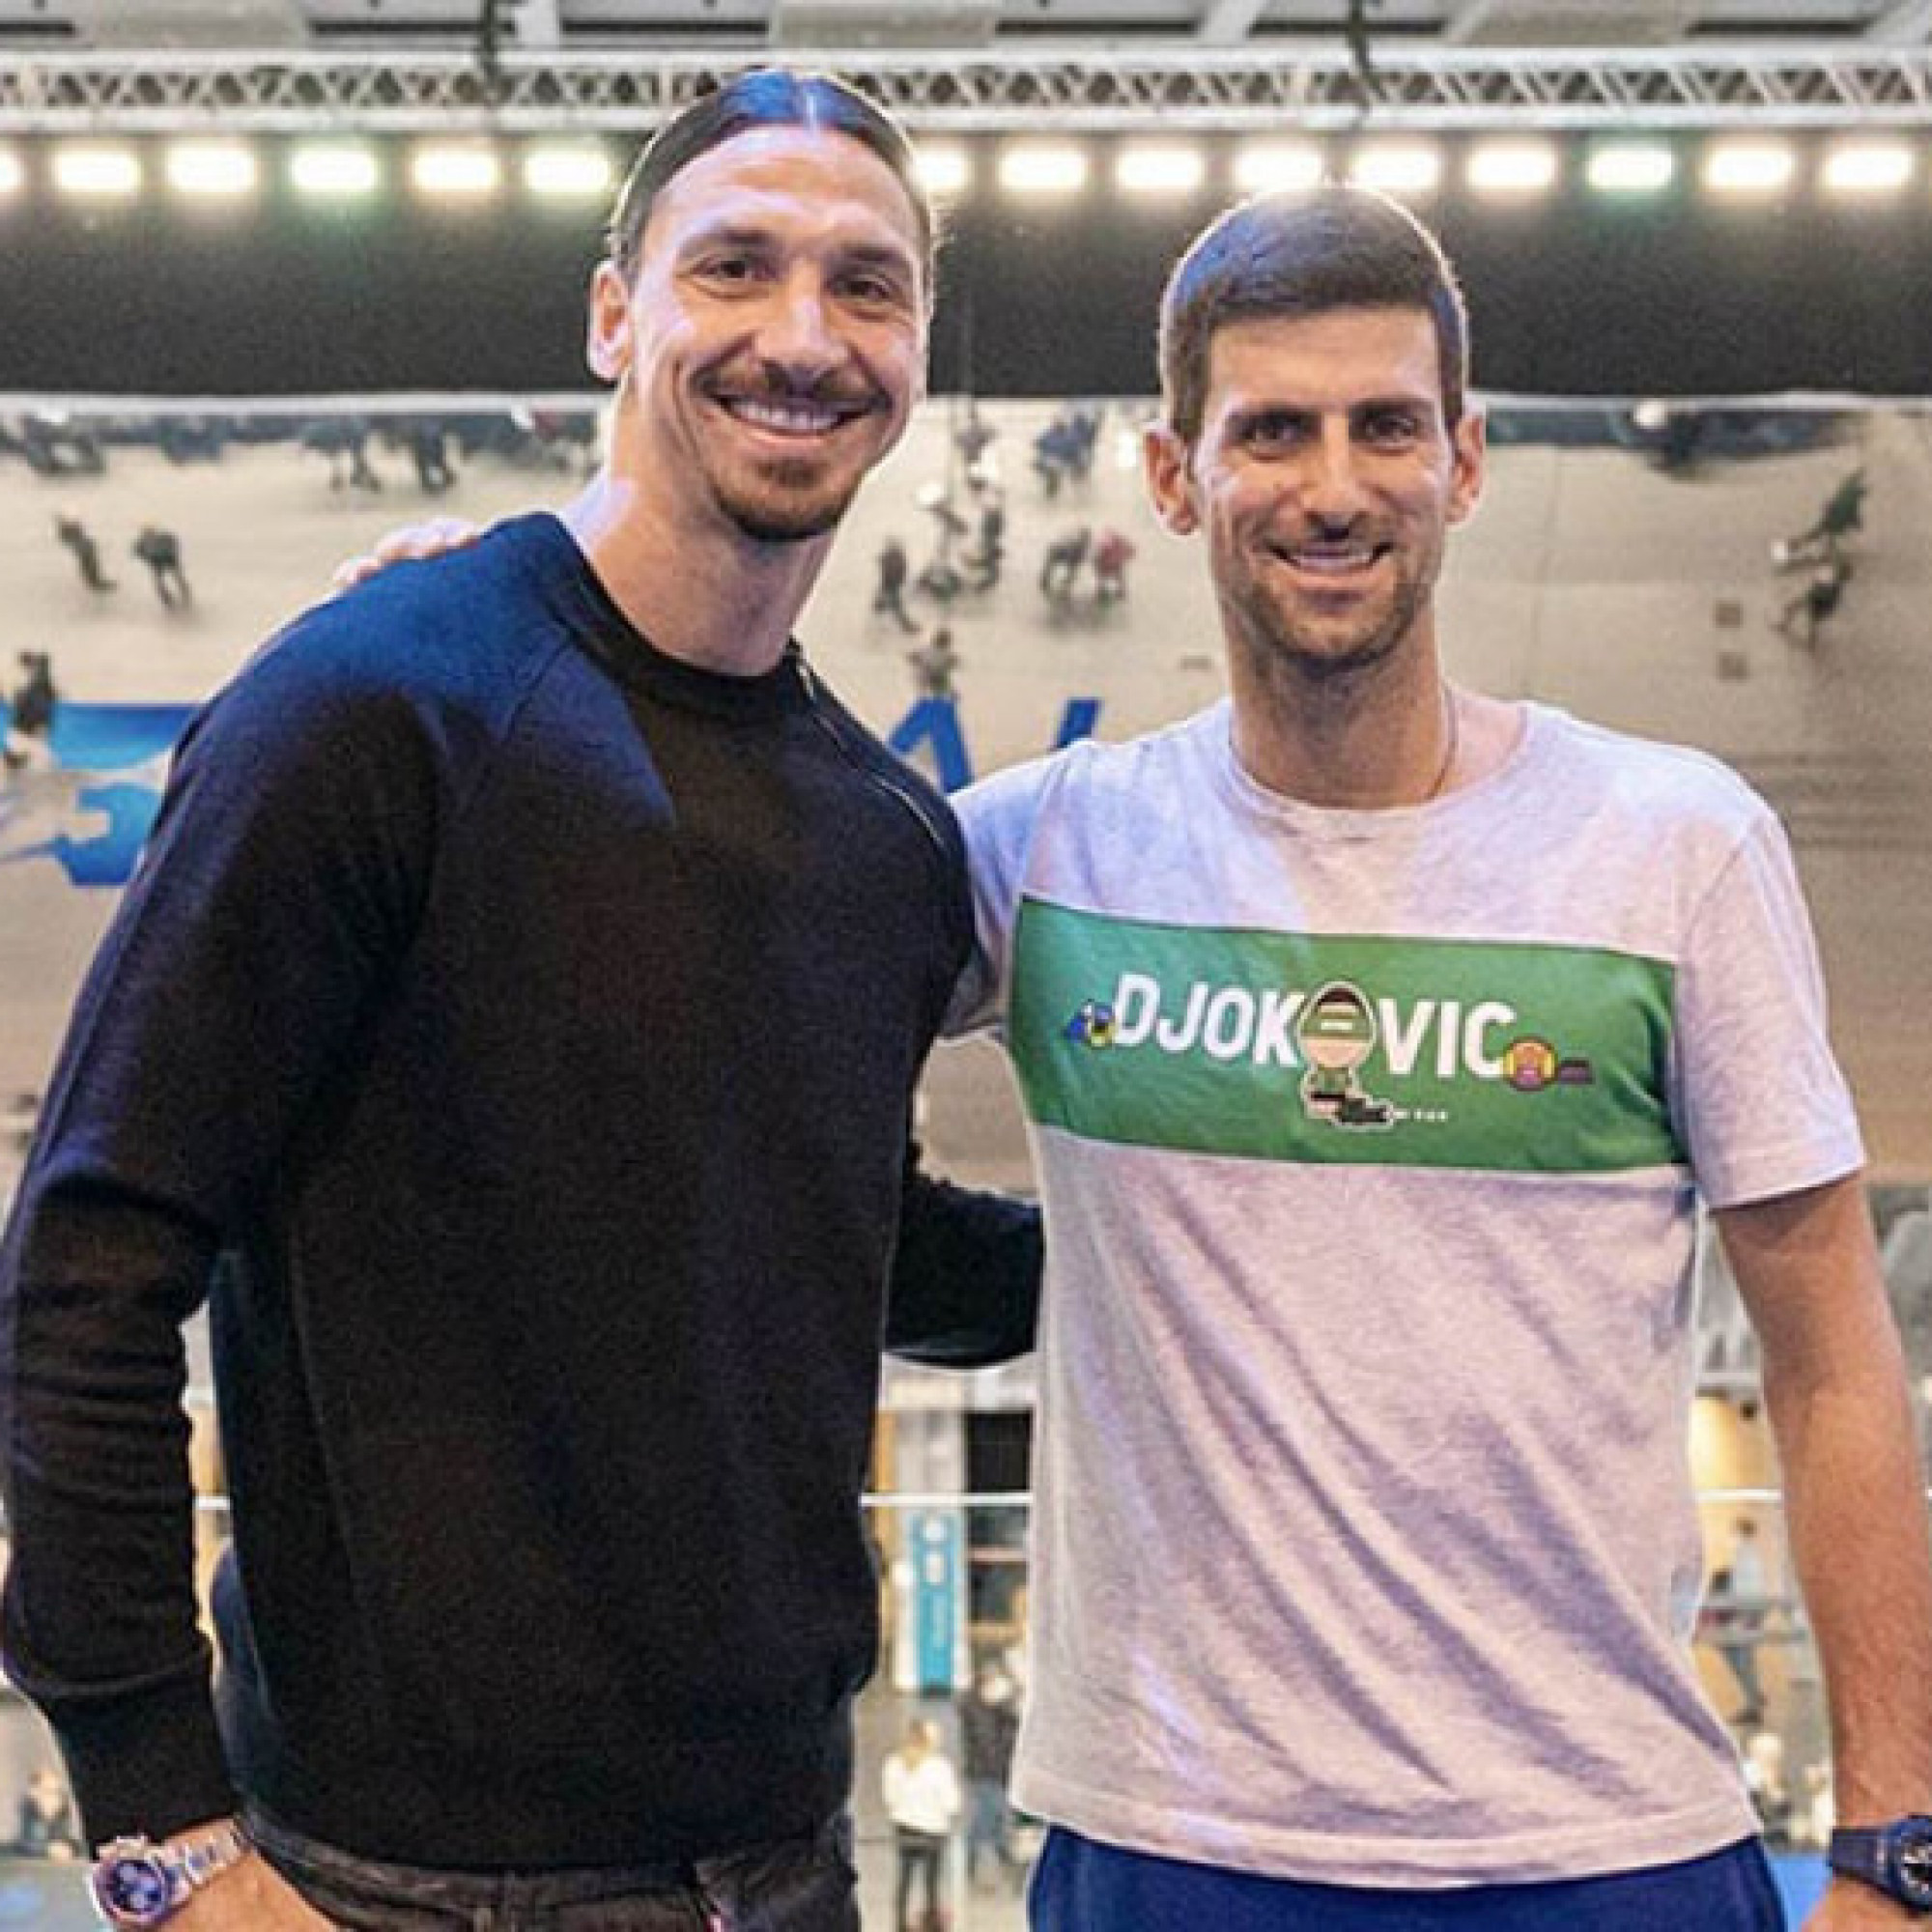  - Nóng nhất thể thao trưa 26/1: Ibrahimovic bênh vực Djokovic vụ không tiêm vắc xin